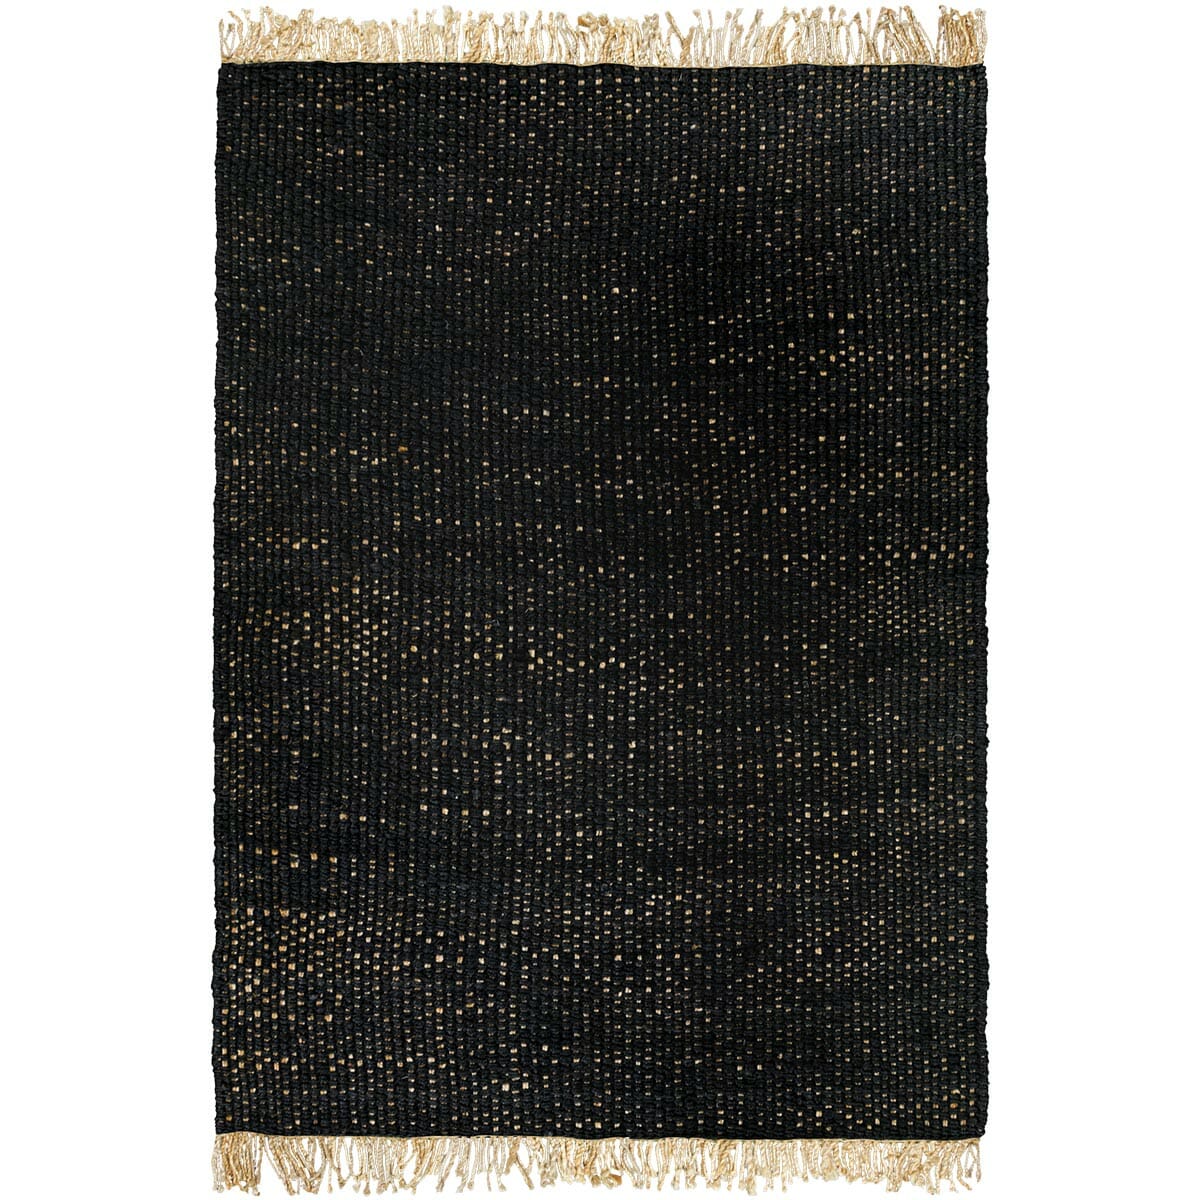 שטיח תמר אריגה גסה 06 שחור/בז' עם פרנזים | השטיח האדום